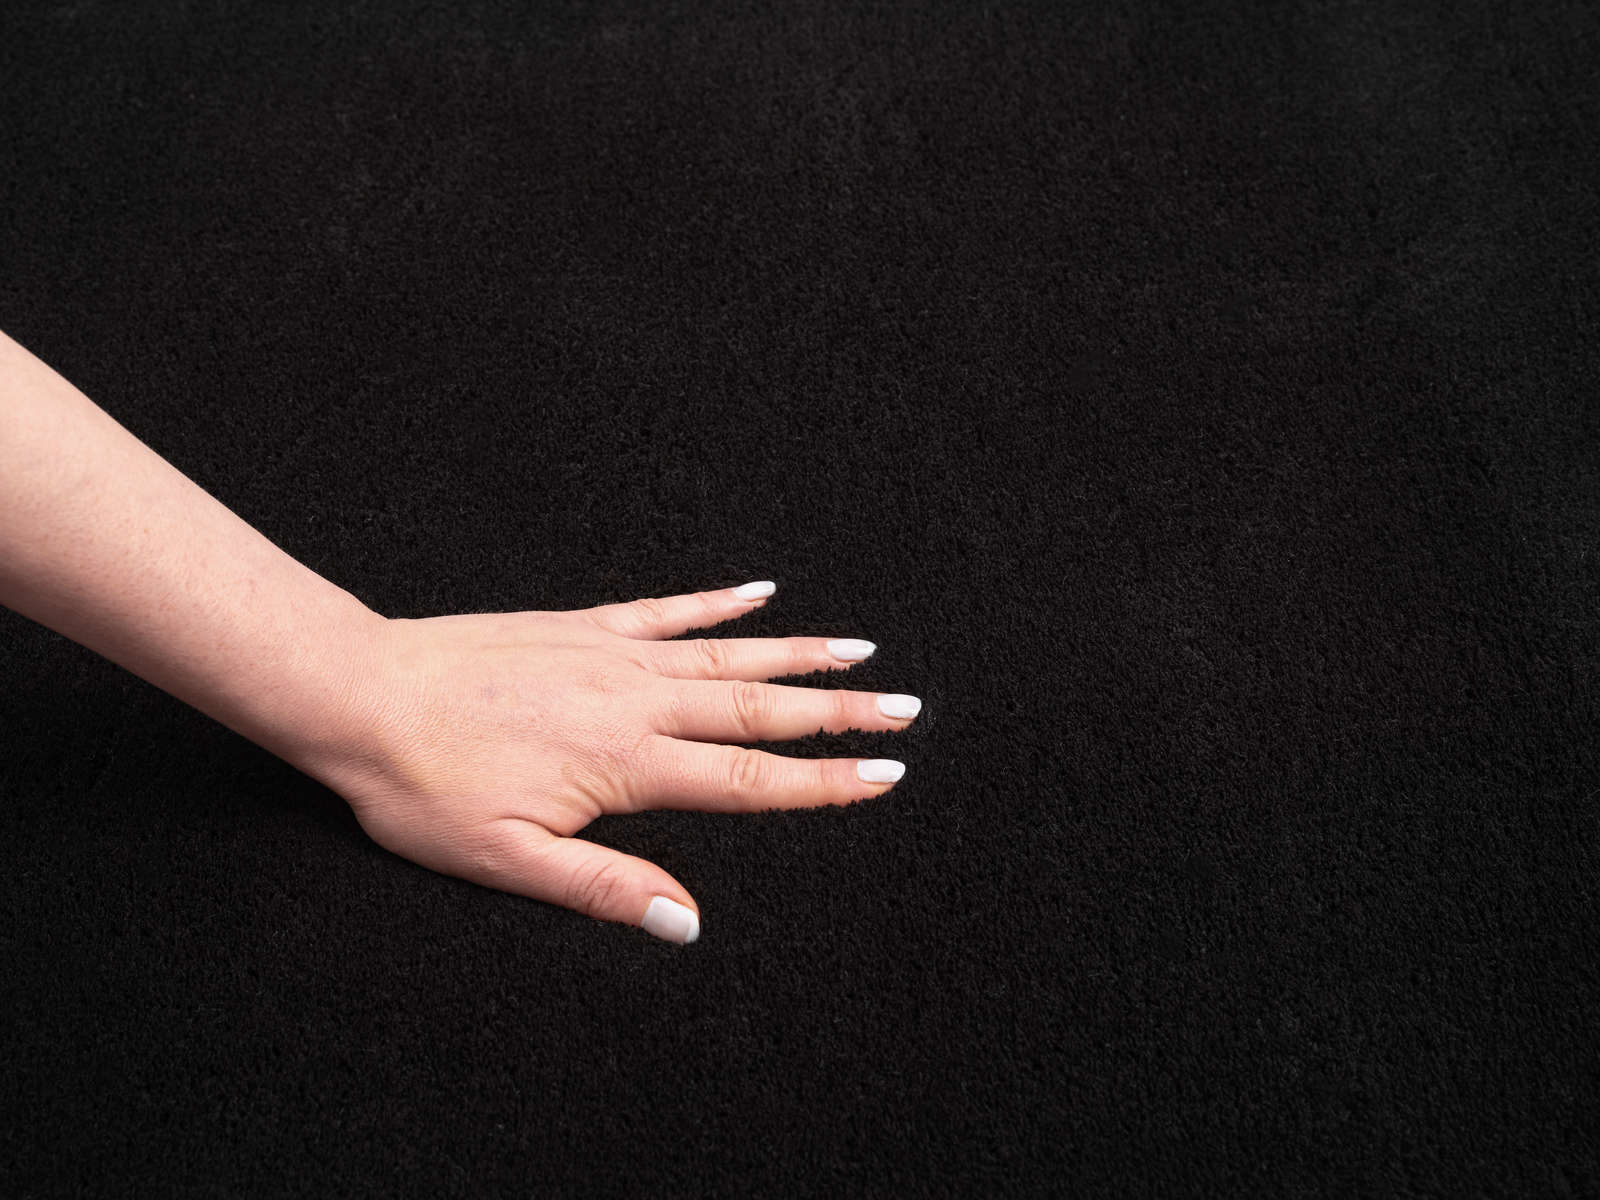             Velvety high pile carpet in black - 170 x 120 cm
        